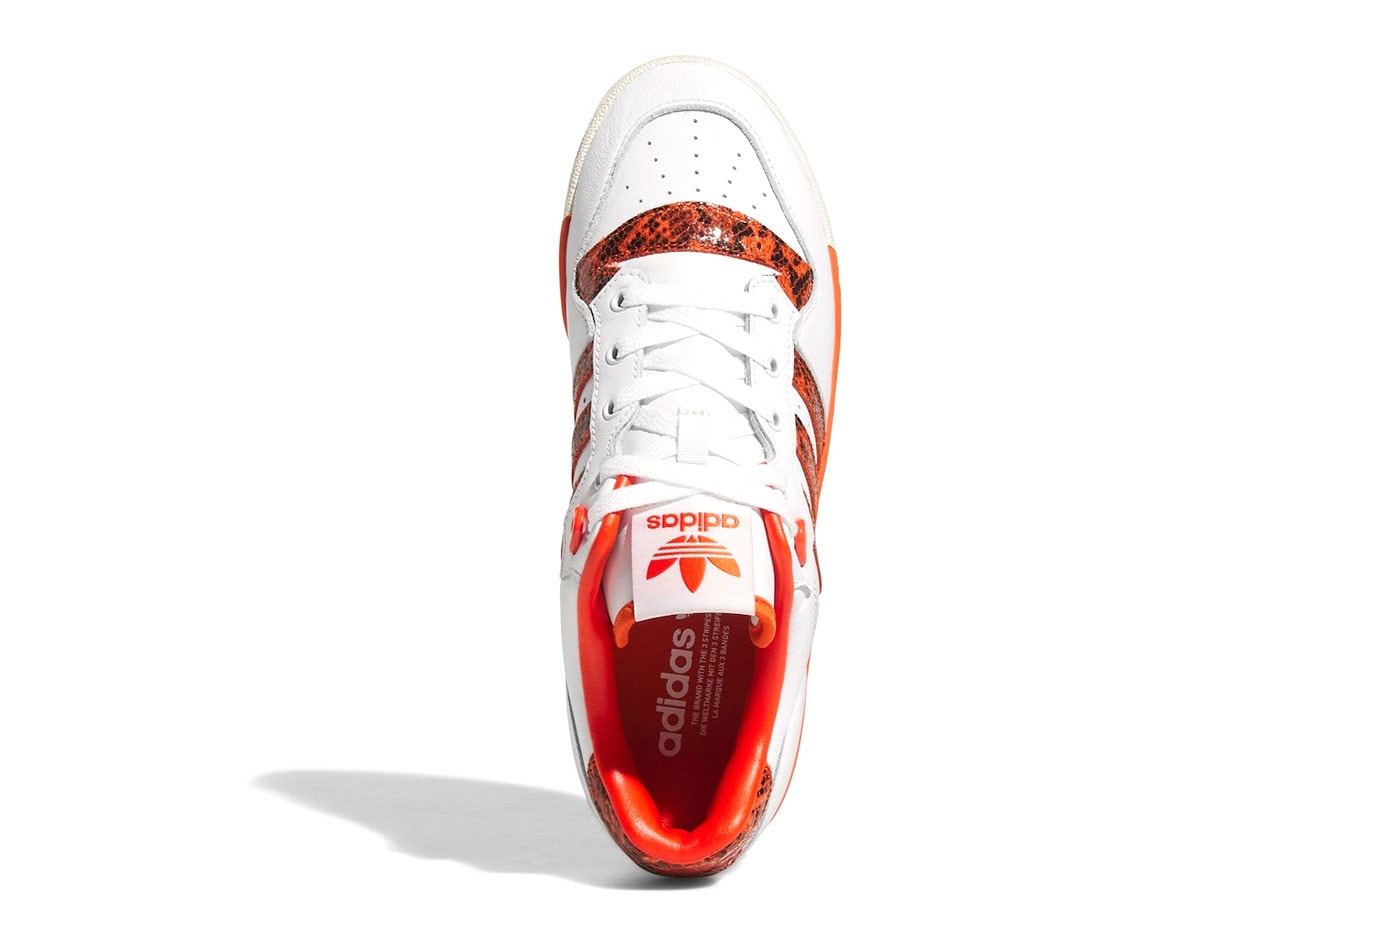 adidas Rivalry Low Orange Snakeskin Halloween Sneaker hp9048 Price Release Info